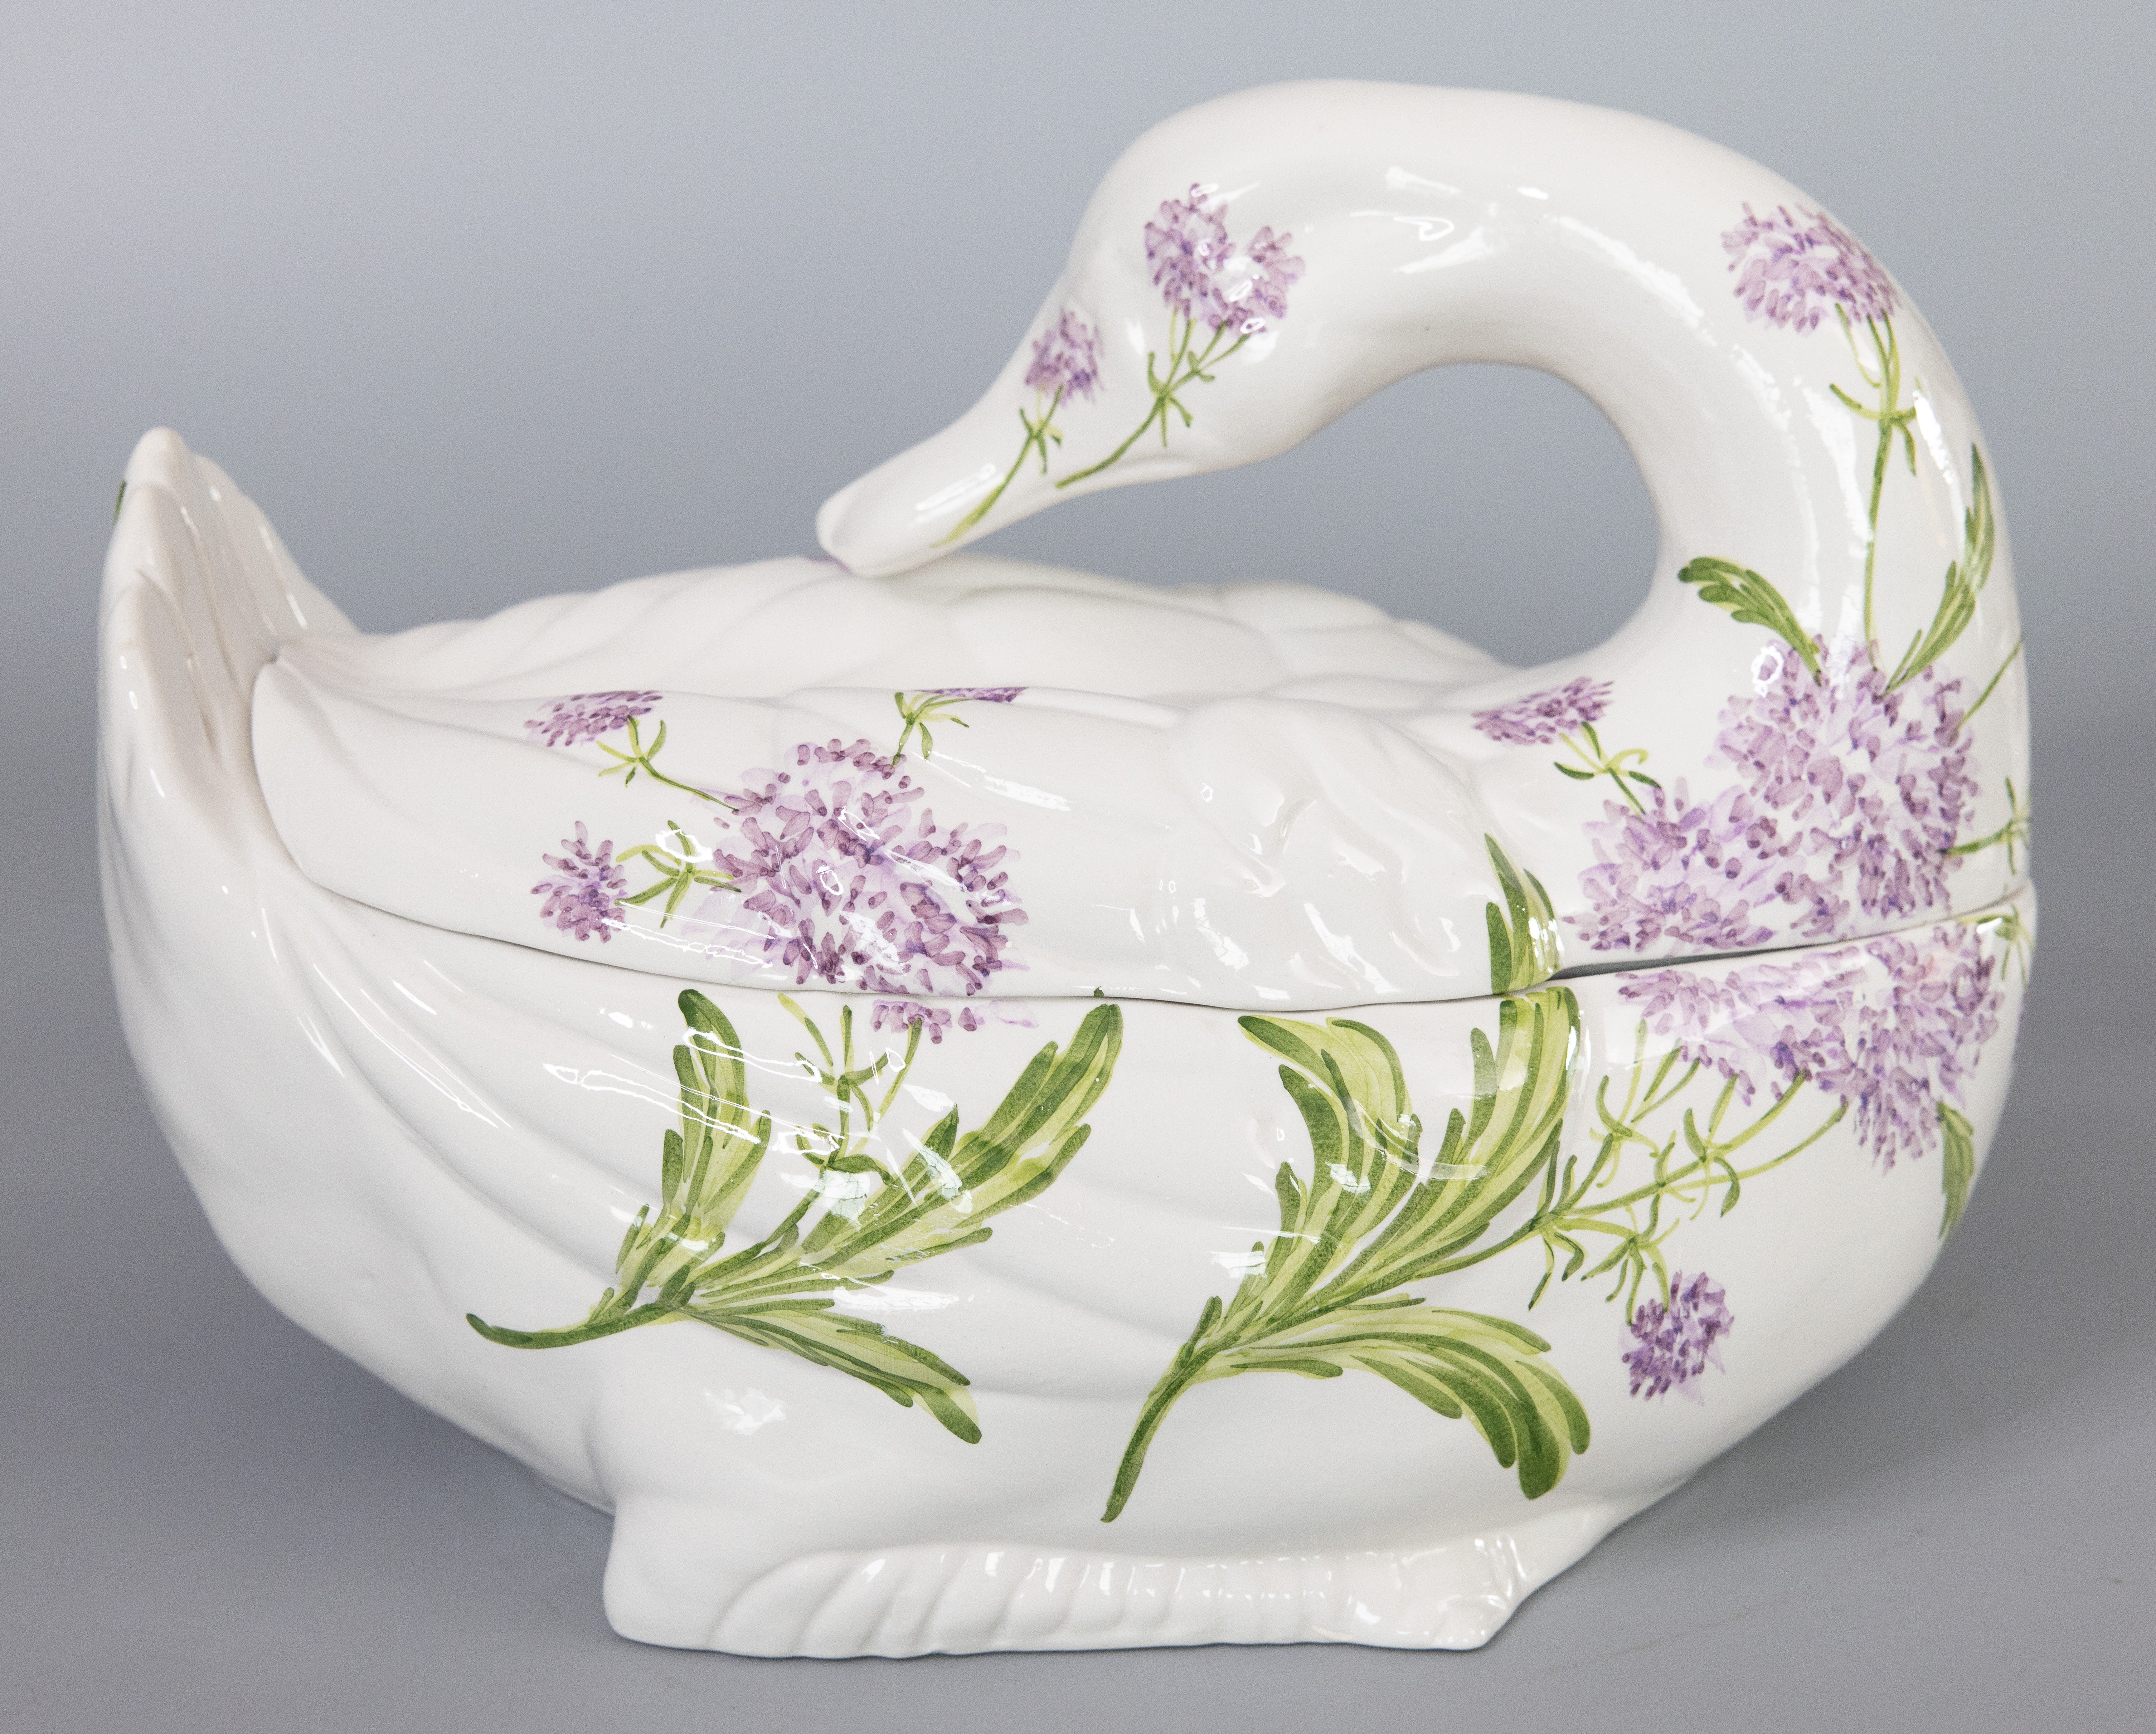 Une belle soupière en céramique italienne à motif floral de cygne. Marque du fabricant au revers. Cette magnifique soupière a la forme d'un gracieux cygne avec de magnifiques fleurs peintes à la main. Il serait parfait pour servir ou pour être